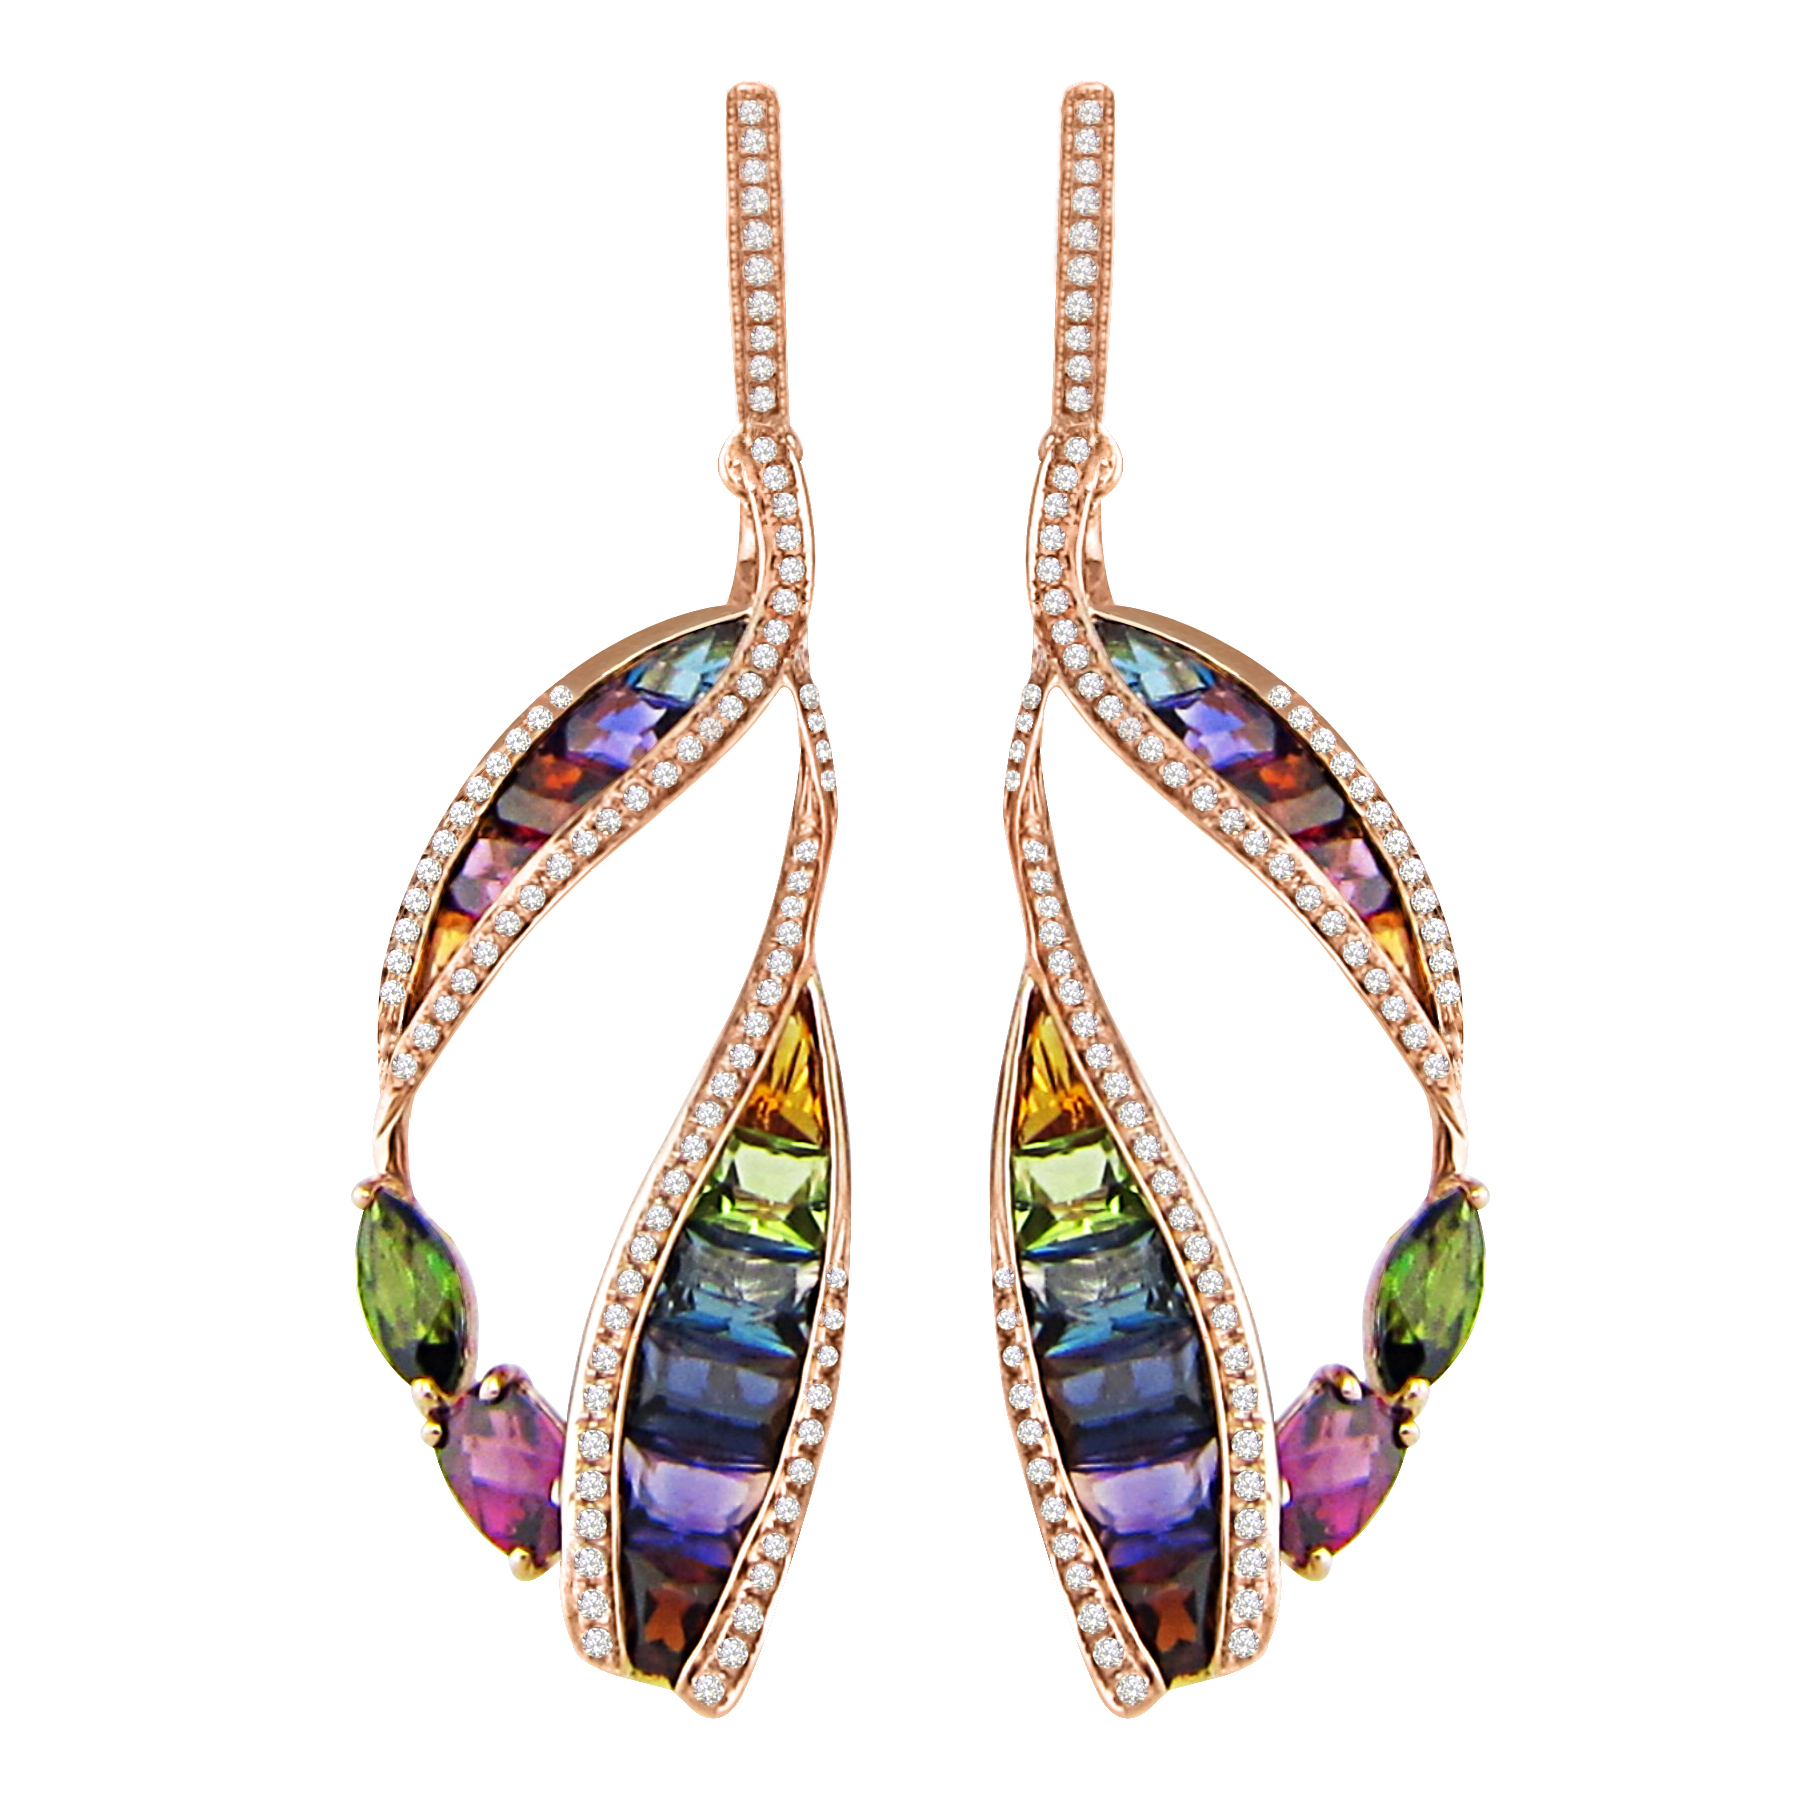 Bellarri Eternal Love earrings | JCK On Your Market